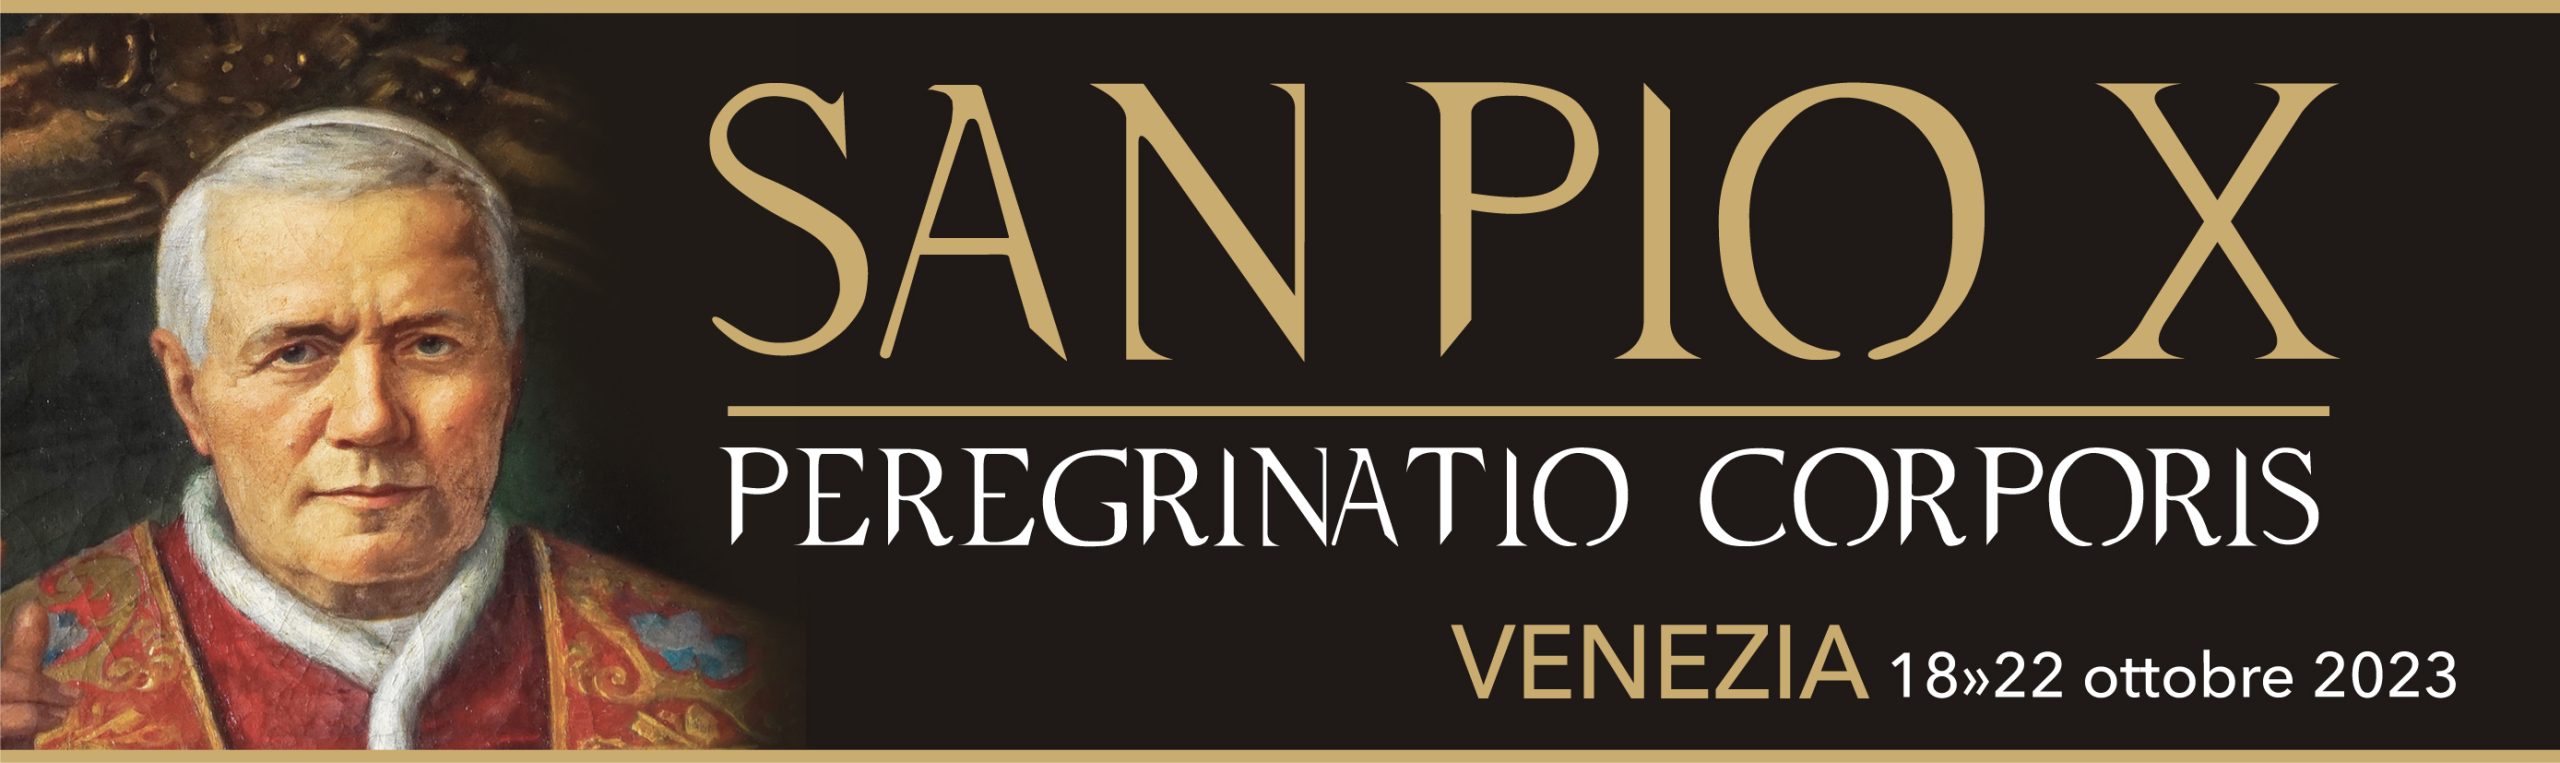 Sito dedicato alla peregrinatio corporis di S. Pio X a Venezia dal 18 al 22 ottobre 2023